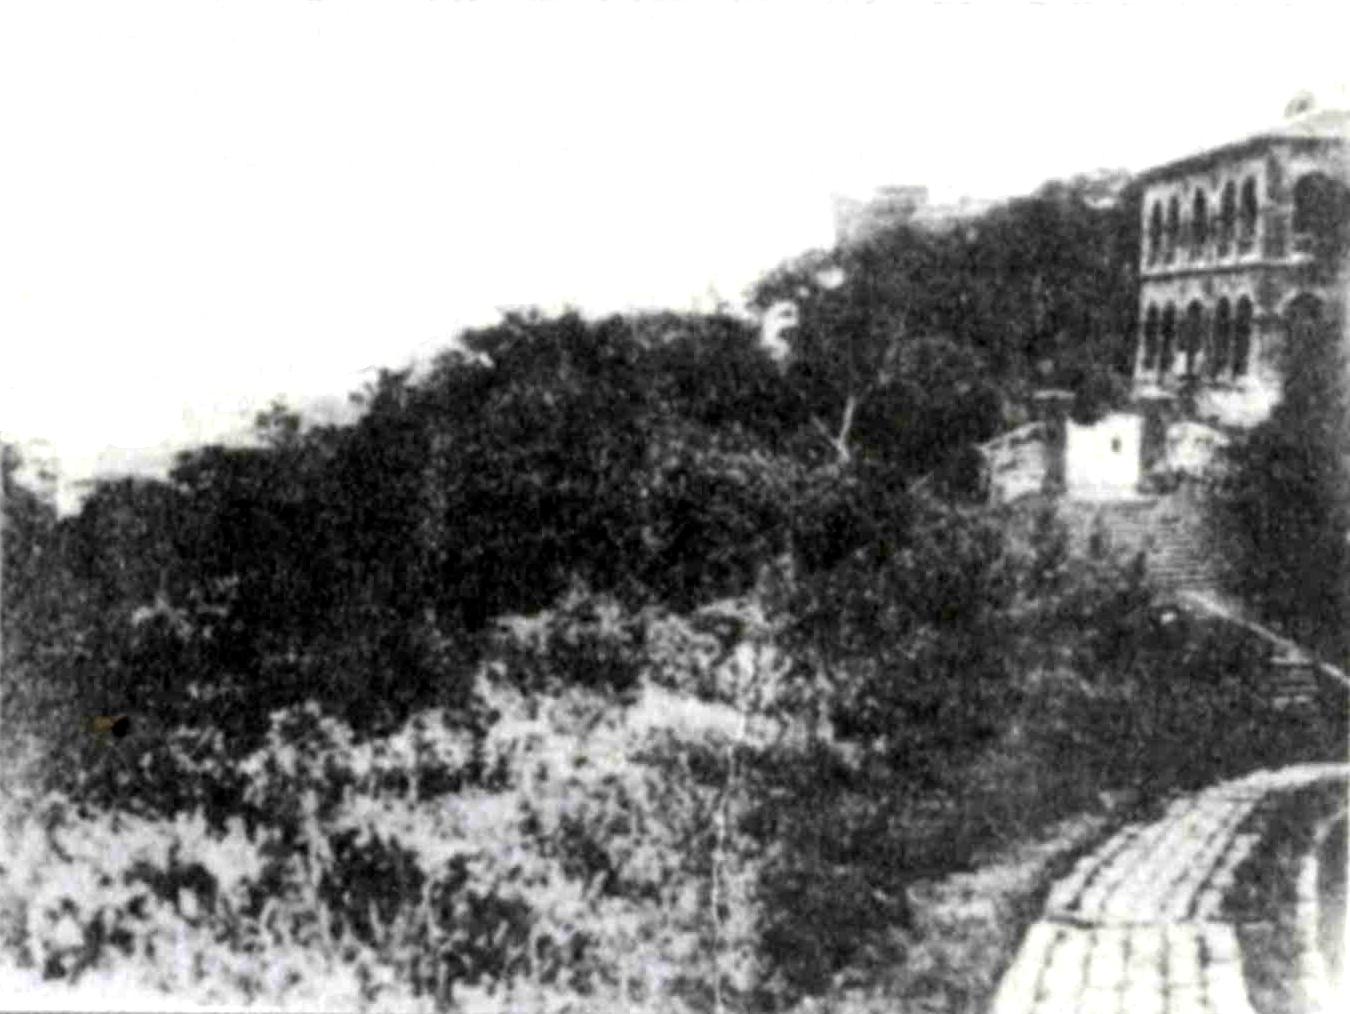 紅毛城圖片檔:1905年以前的舊照片